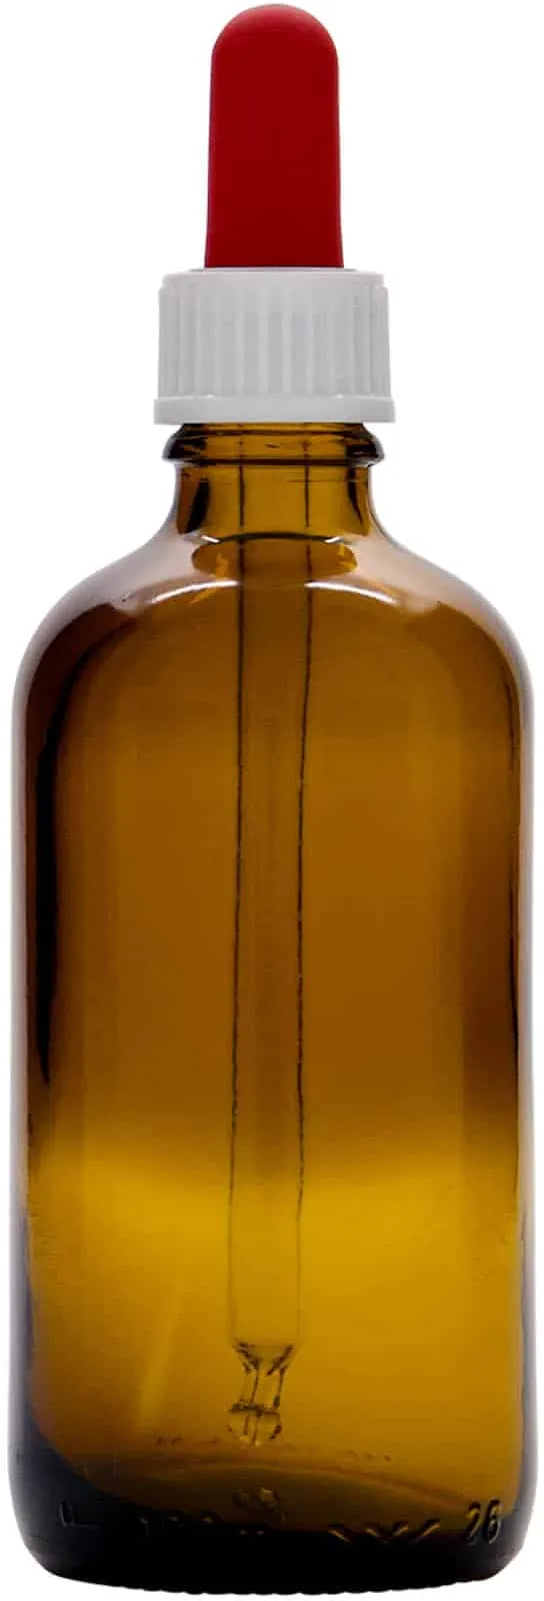 100 ml Flacone con contagocce , vetro, marrone-rosso, imboccatura: DIN 18